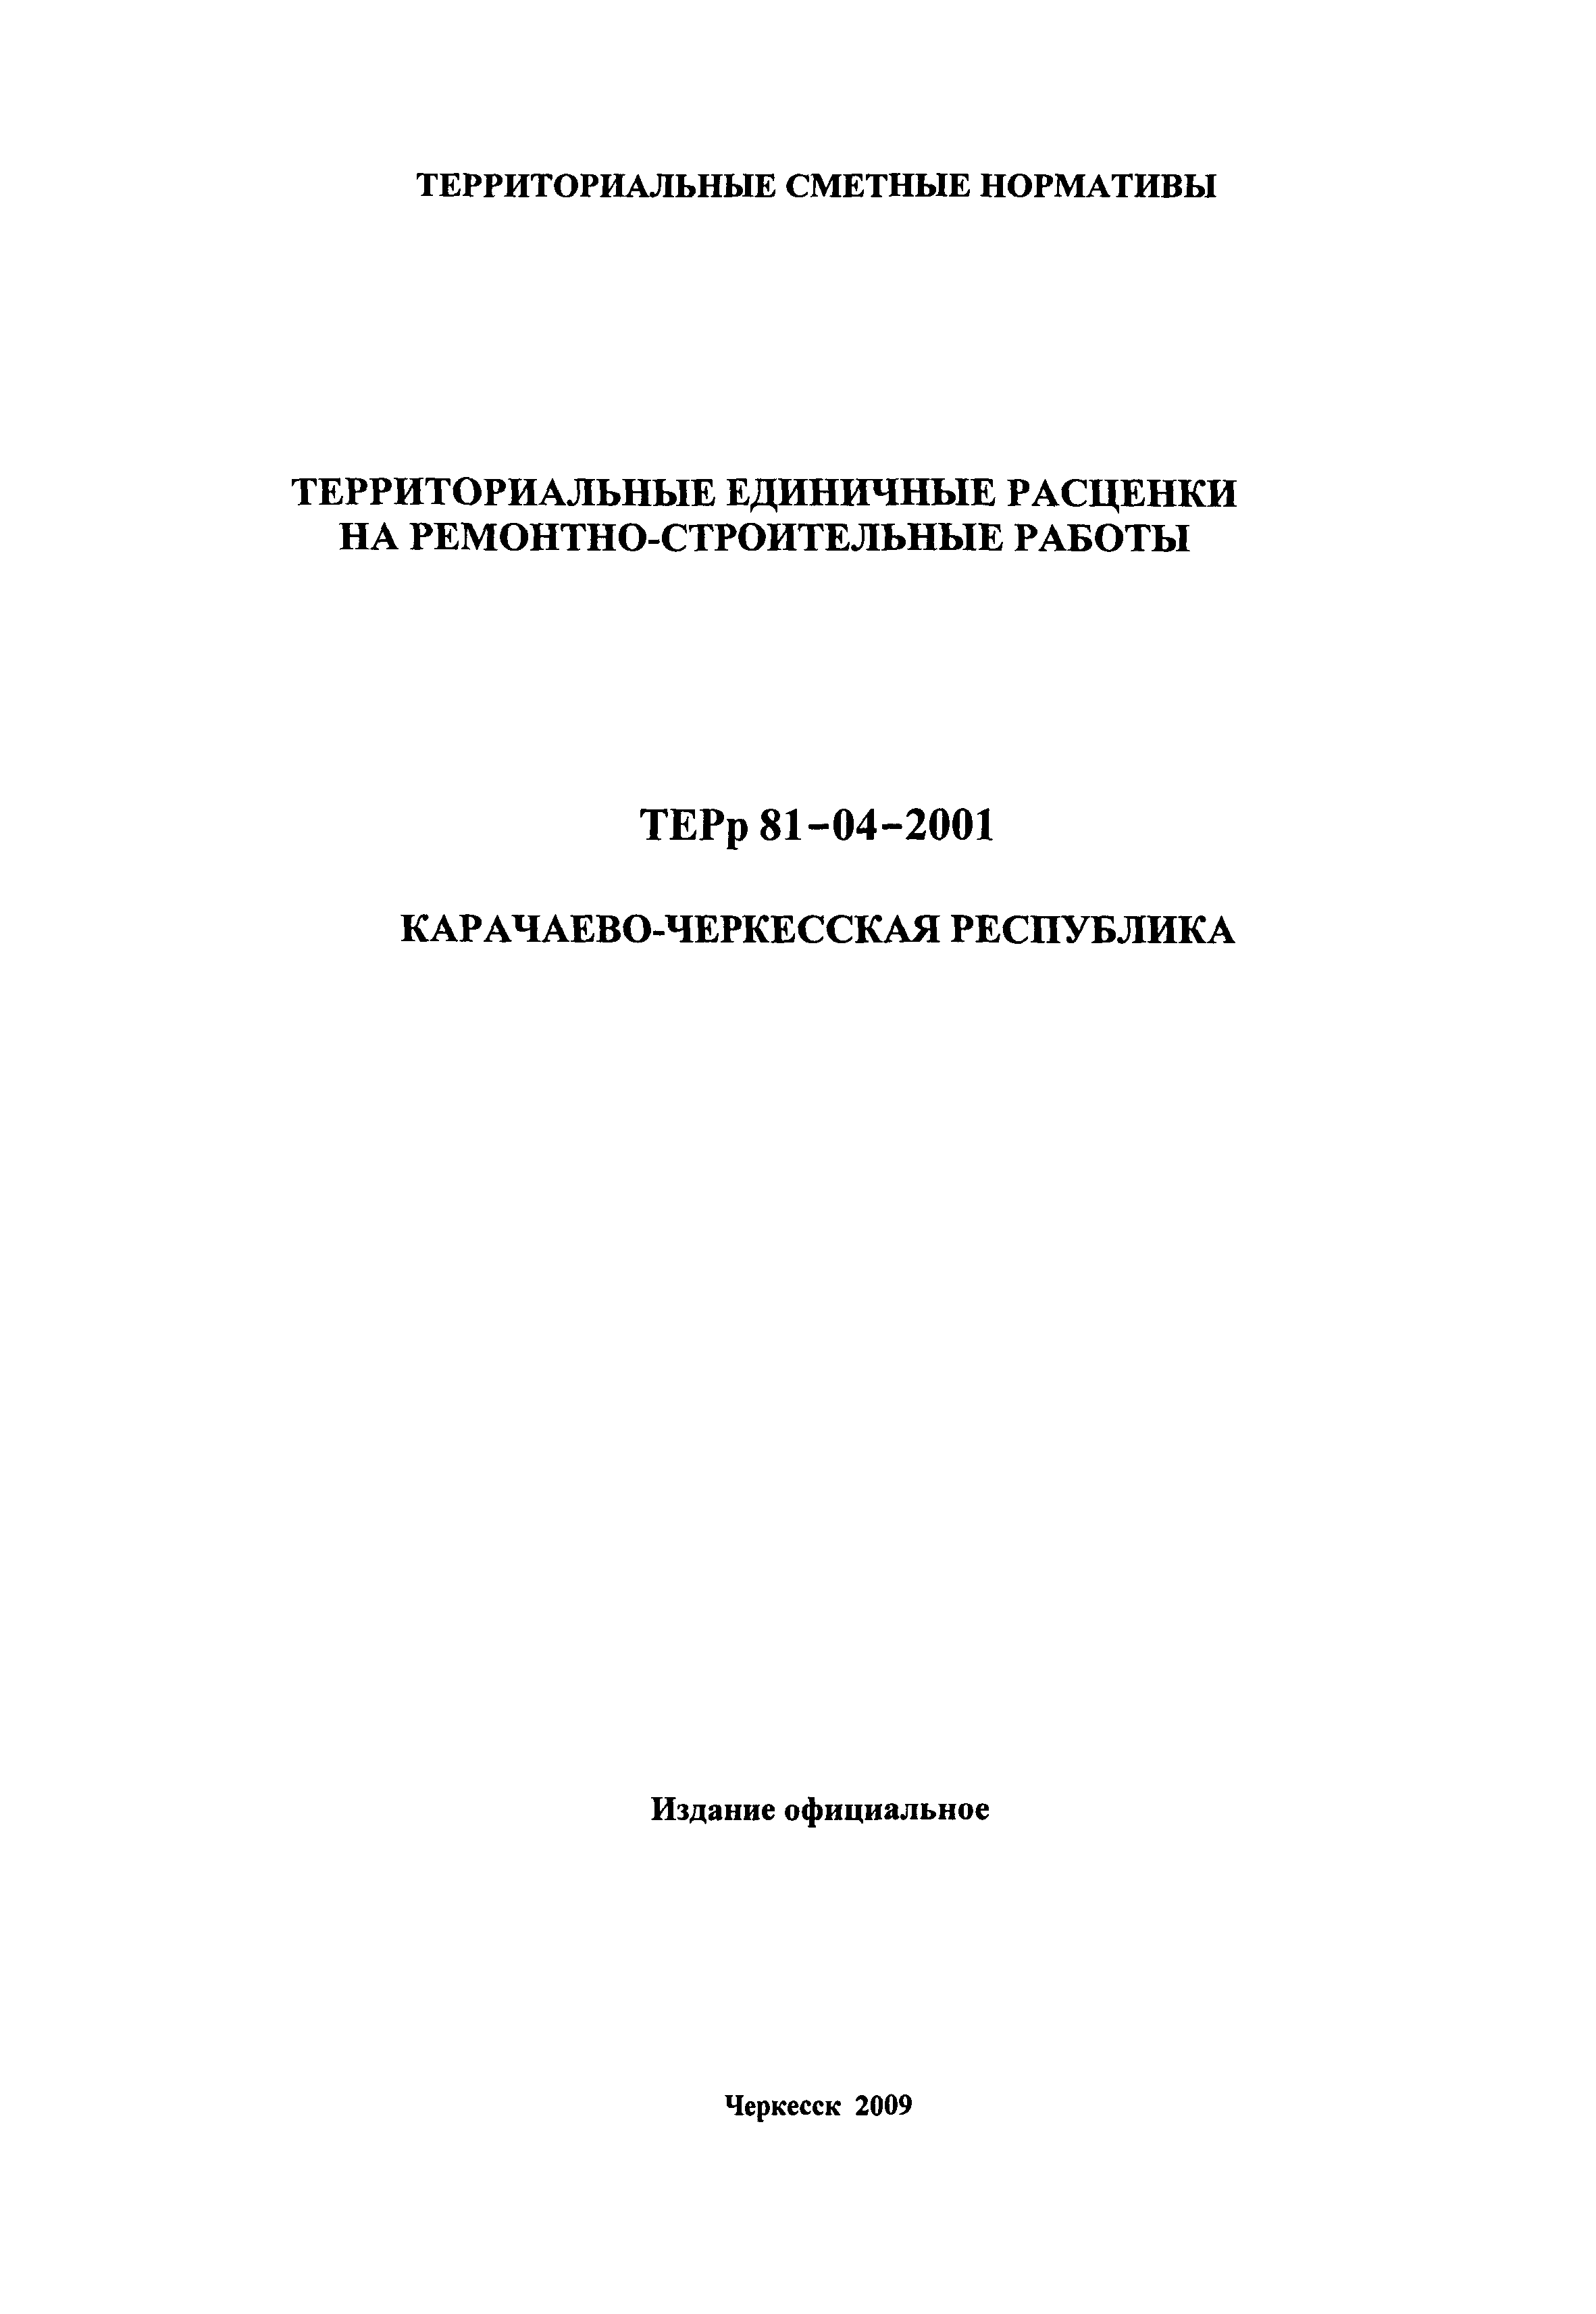 ТЕРр Карачаево-Черкесская Республика 2001-58